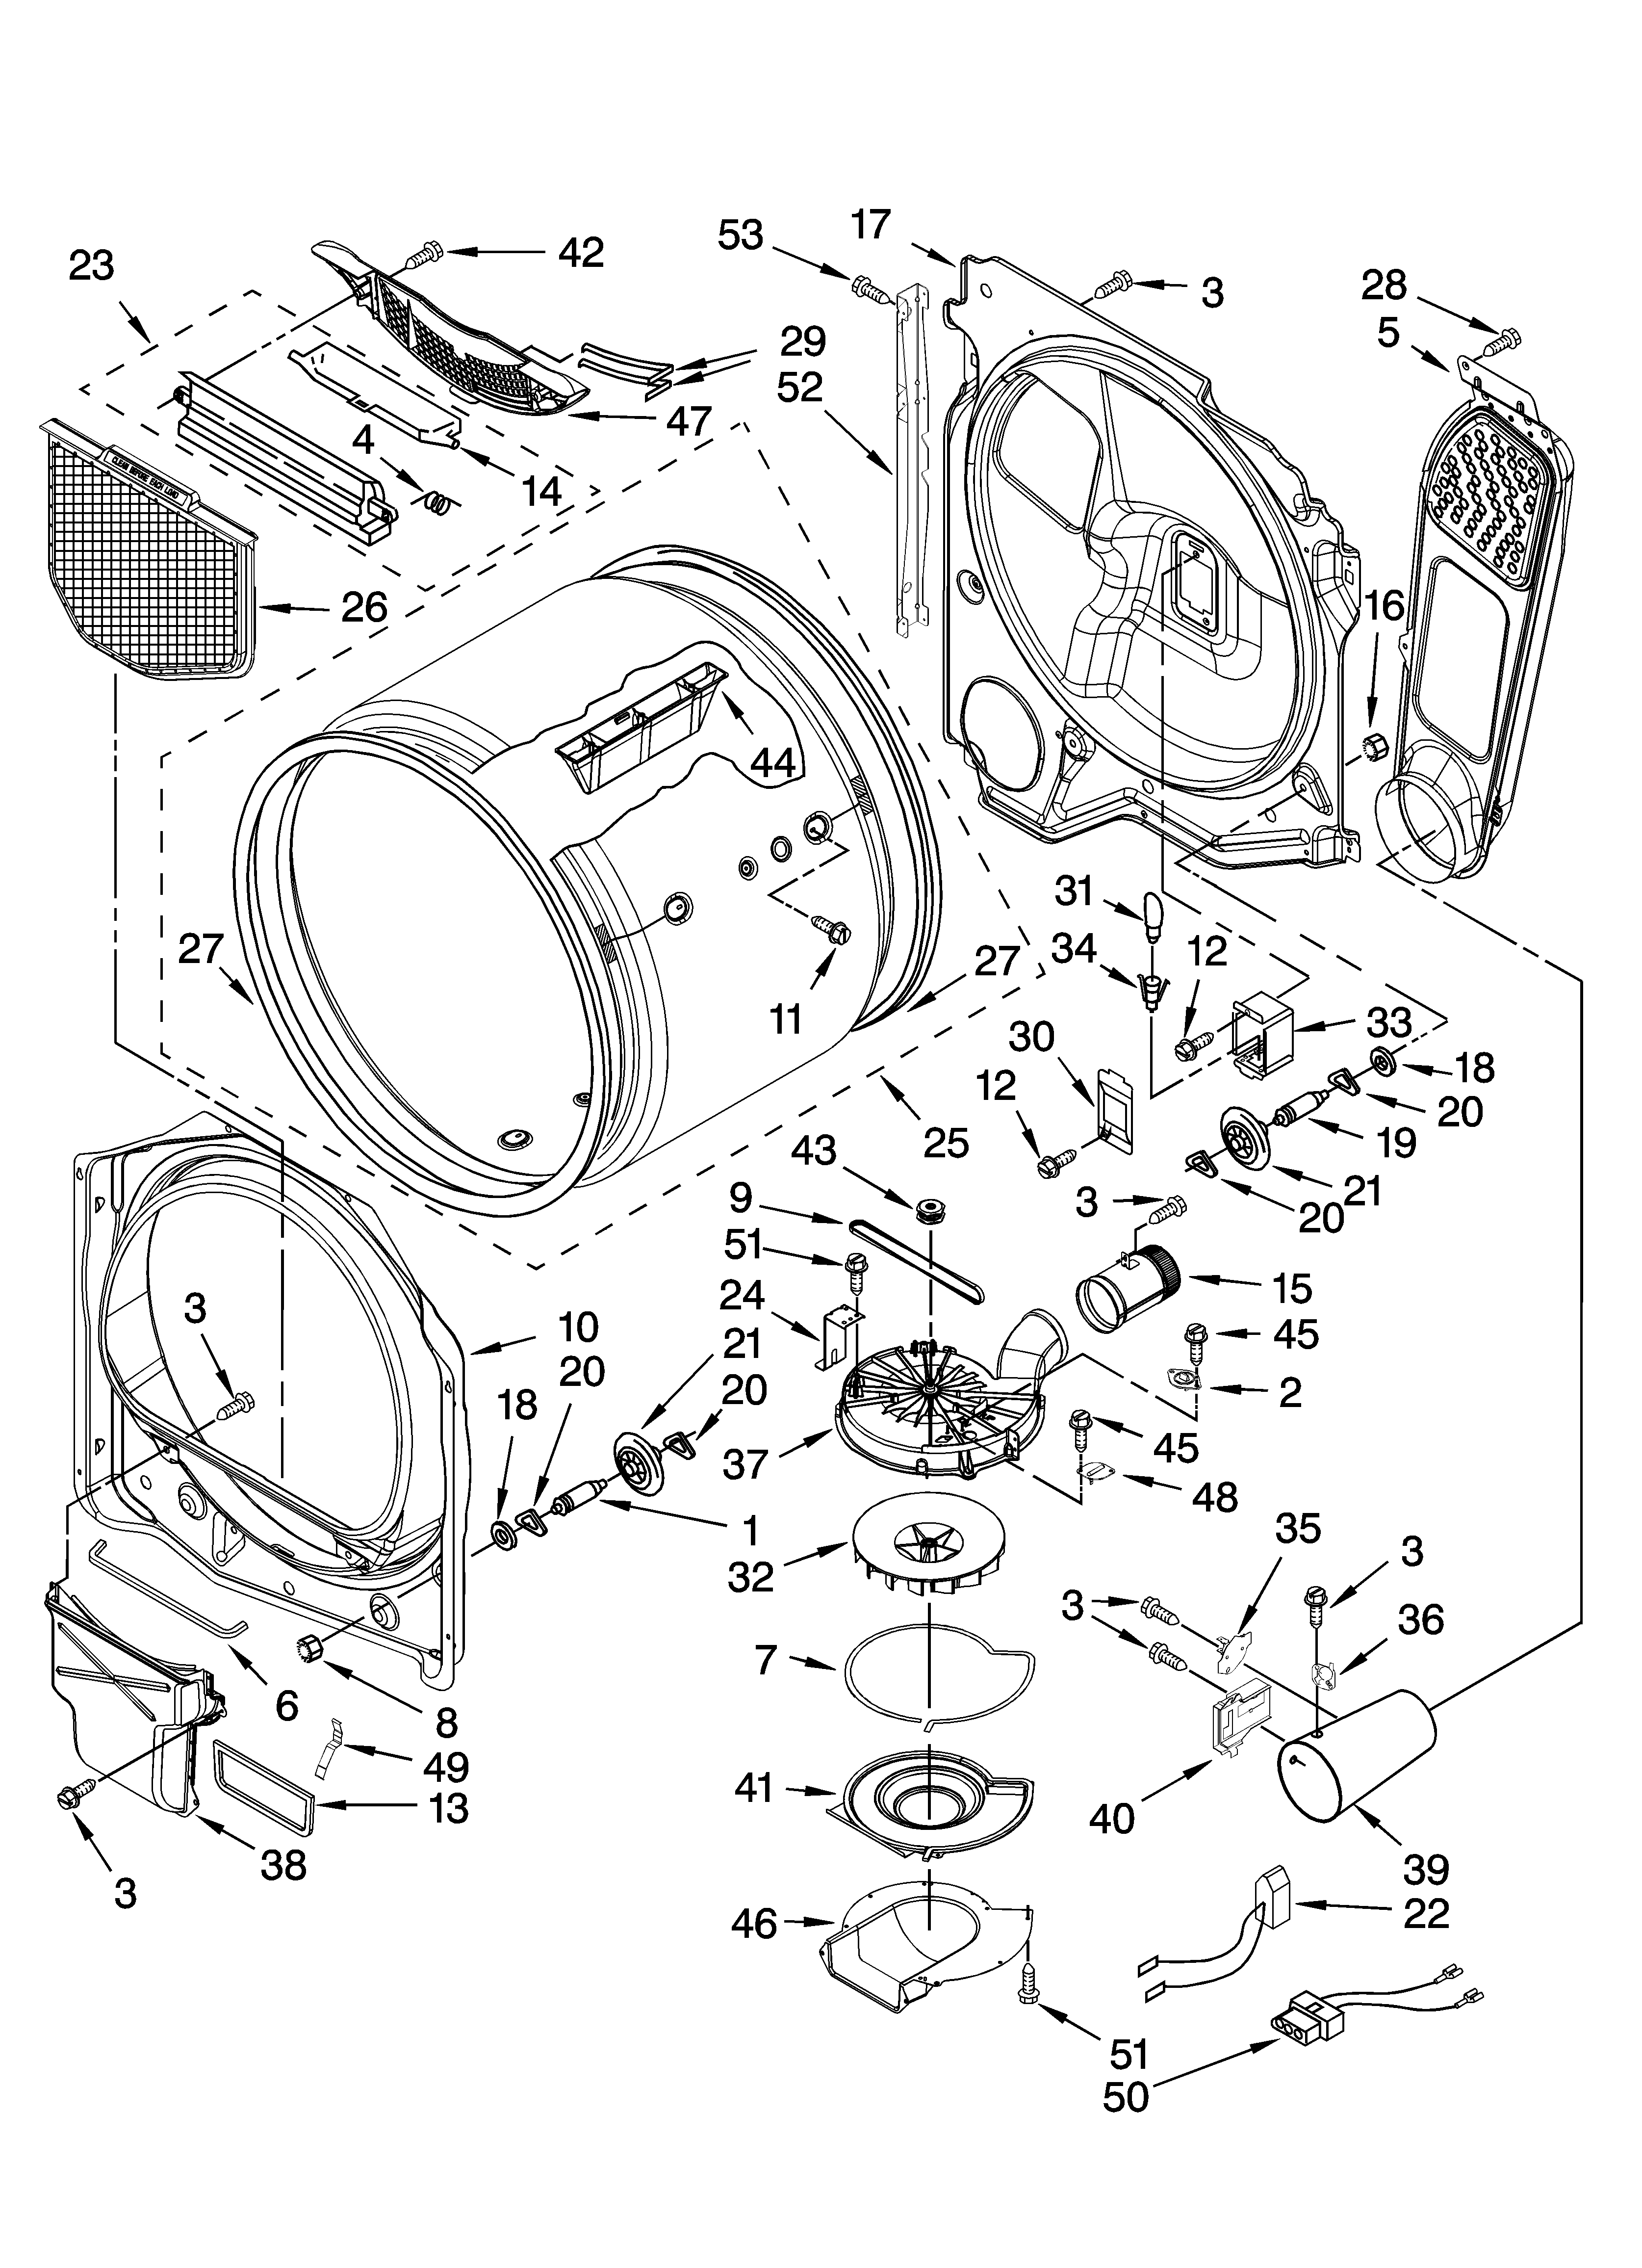 maytag dryer de410 wiring diagram